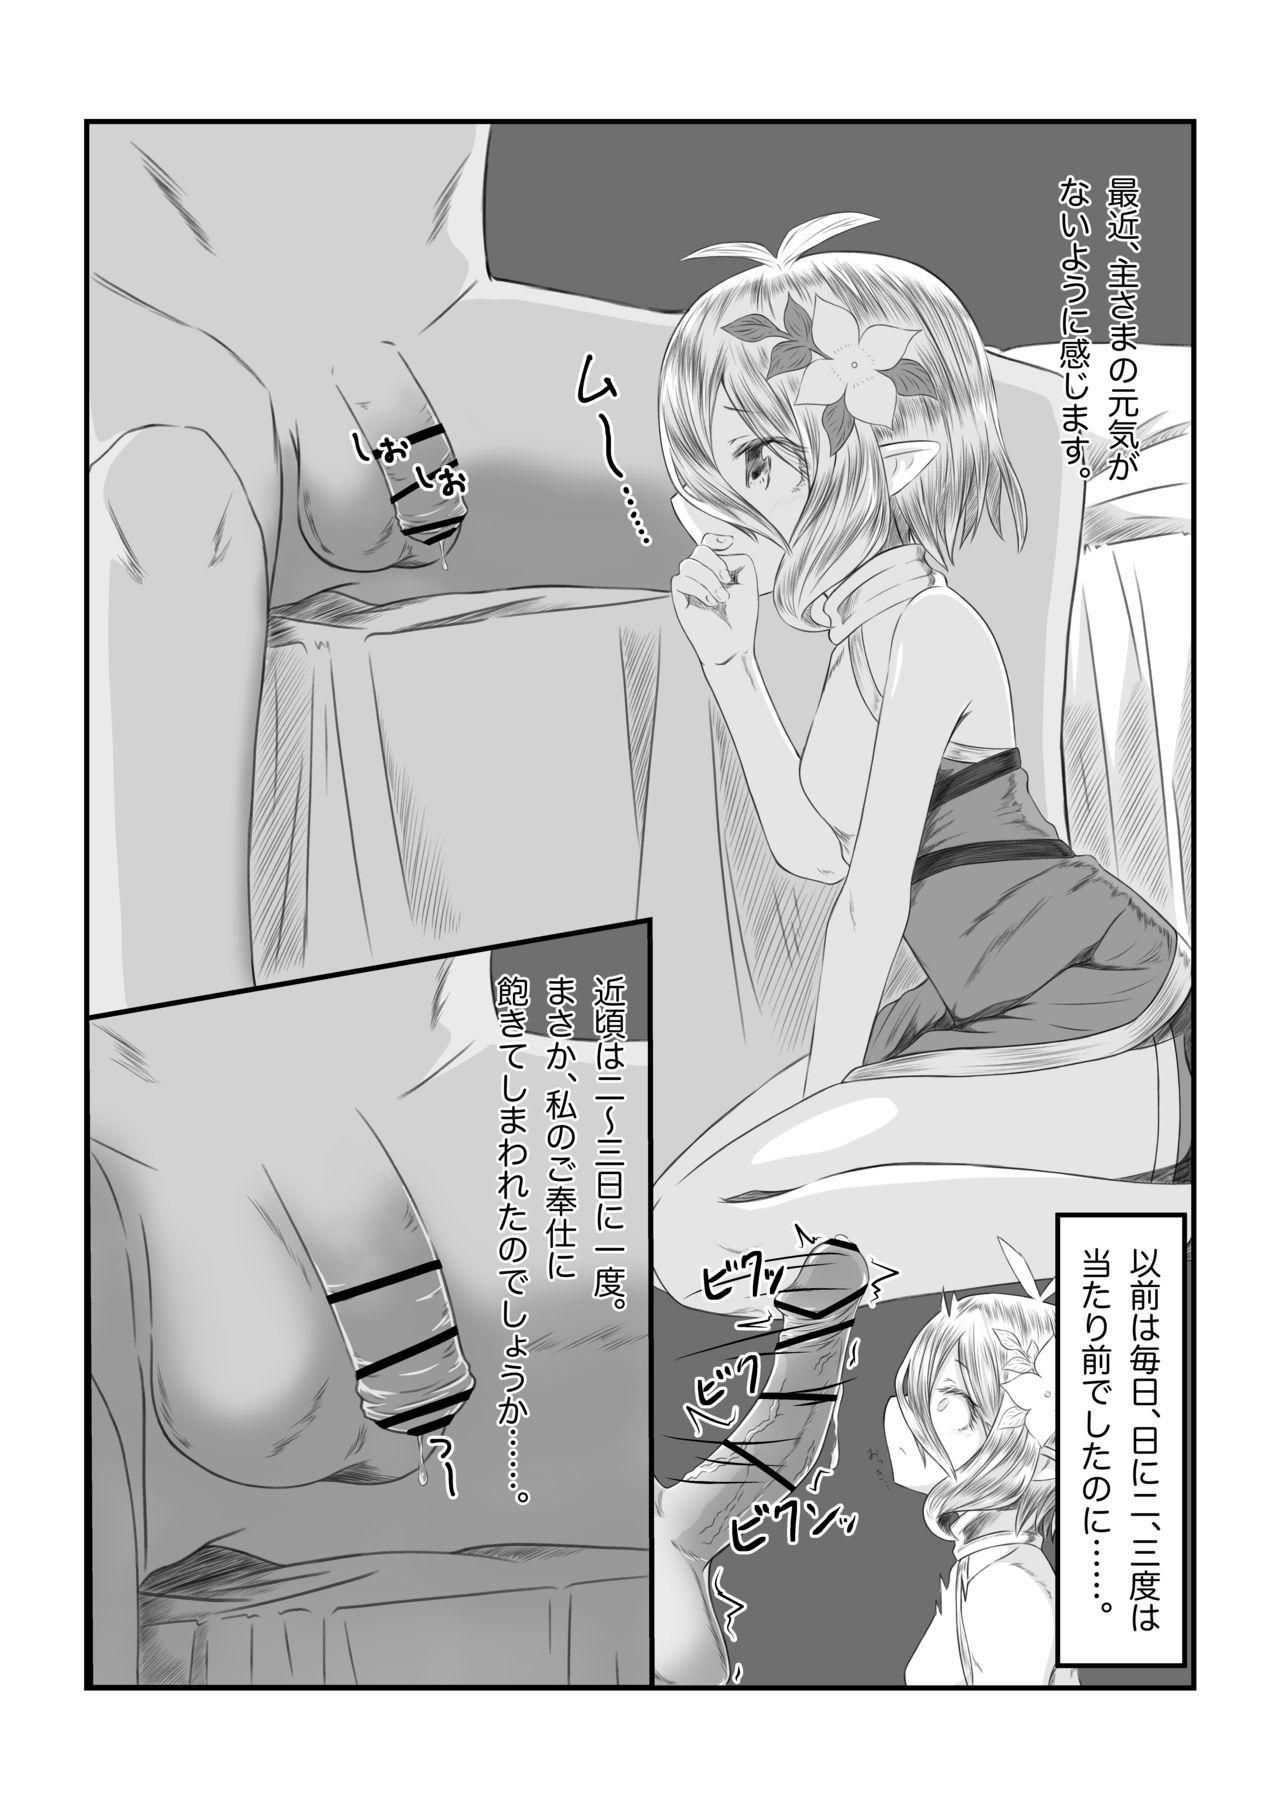 Erotica Sore wa amesu-sama ni kinshi sa rete imasu - Princess connect Tiny Girl - Page 3